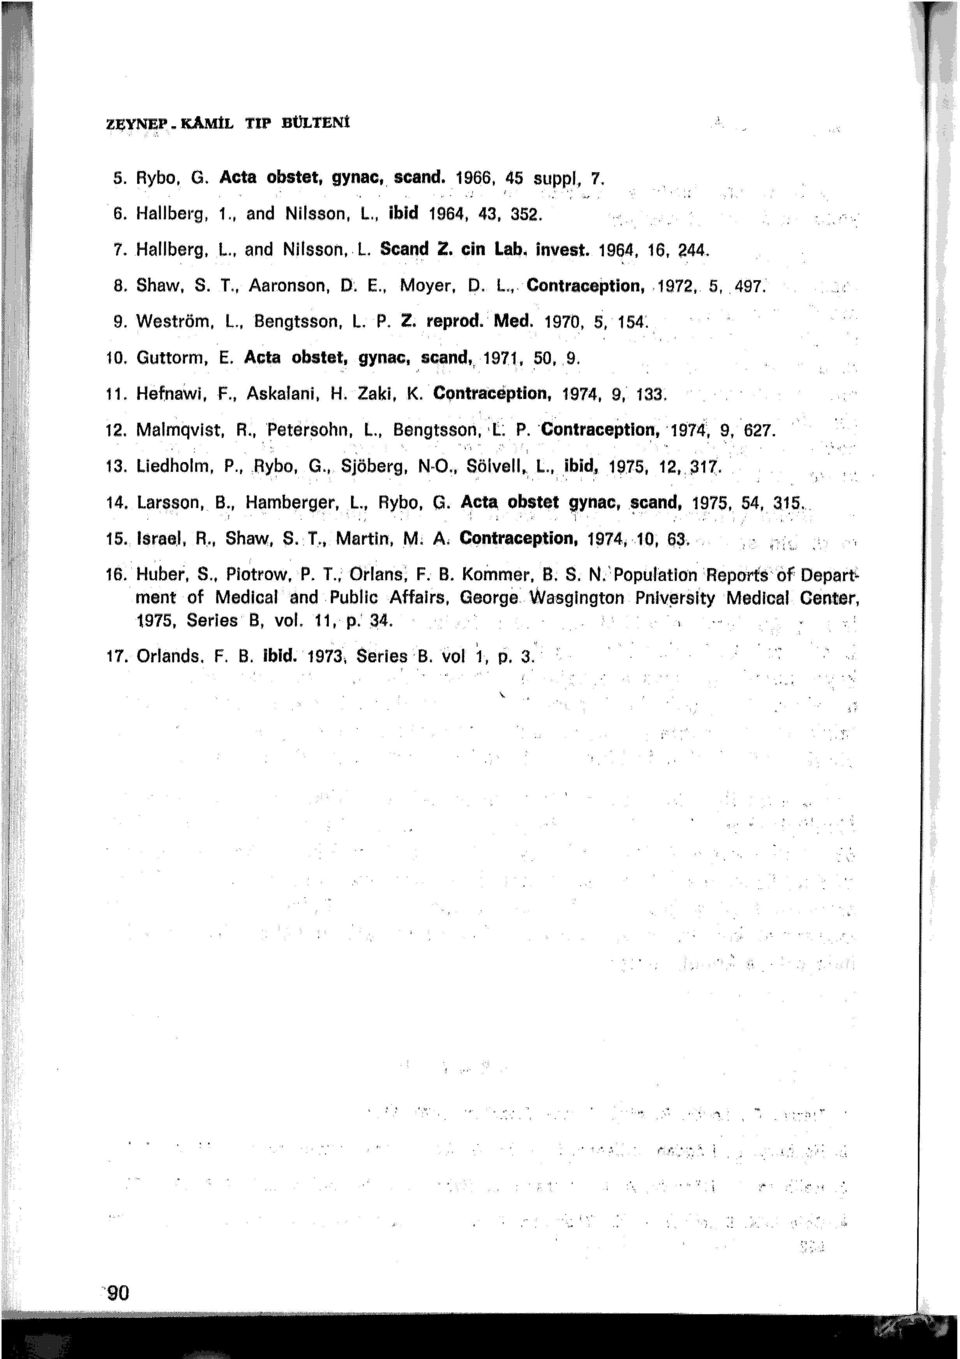 1971, 50, 9., ' f ' 11. Hefnawi, F., Askalani. H. Zaki, K. Contraception, 1974, 9, 133. 12. Malmqvist, A., 'Petersohn, L., Bengtsson, :L P. contraceptio~, 197ıf, 9, 627. 1 13. Liedholm, P., Rybo, G.